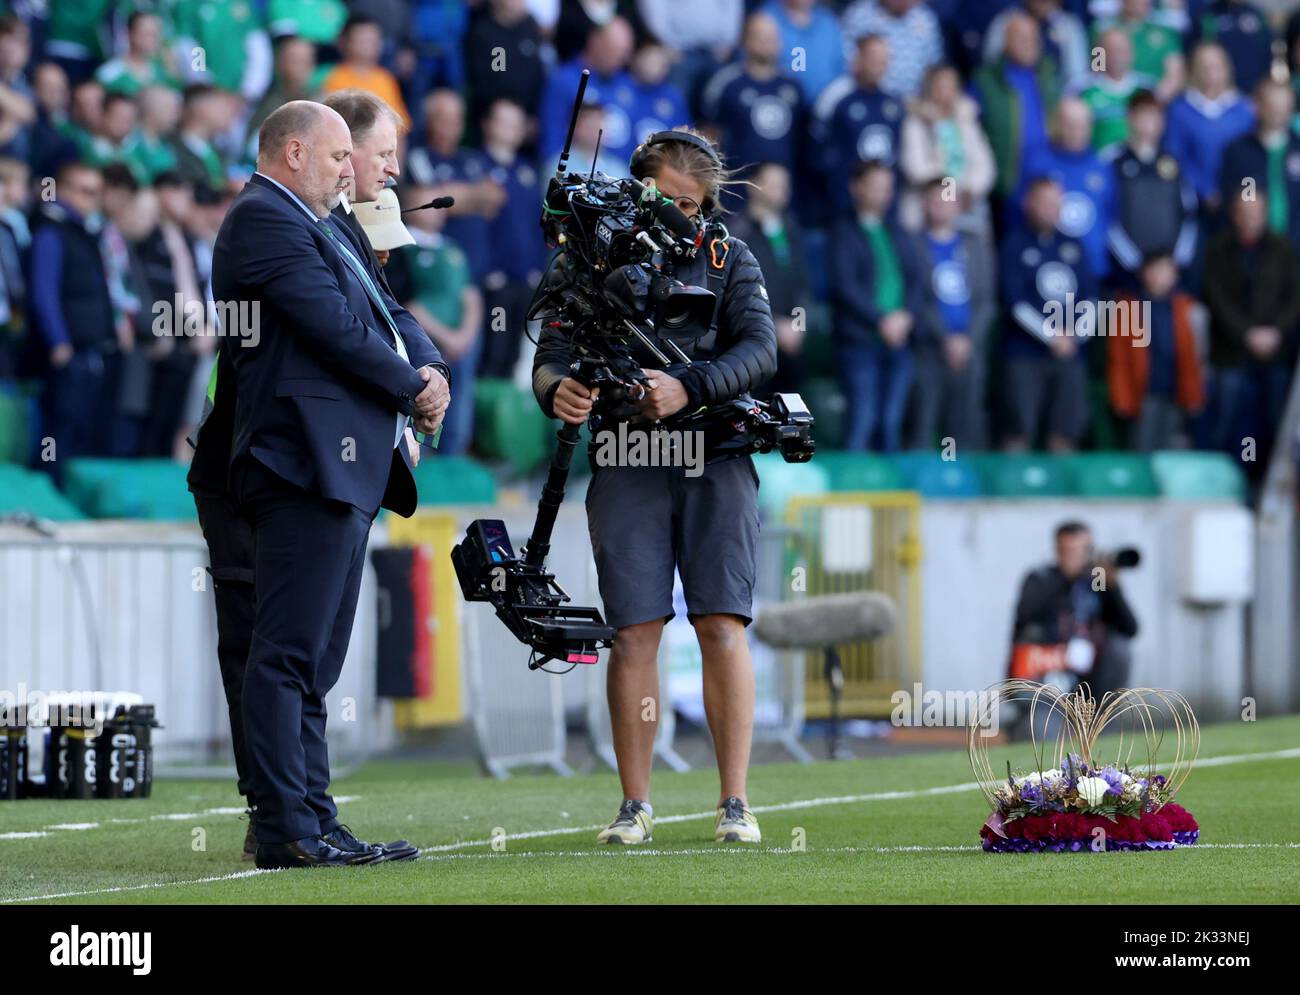 Le président de l'Irish football Association Conrad Kirkwood (à gauche) après avoir déposé une couronne sur le terrain en souvenir de la reine Elizabeth II avant le match du groupe J de l'UEFA Nations League à Windsor Park, Belfast. Date de la photo: Samedi 24 septembre 2022. Banque D'Images